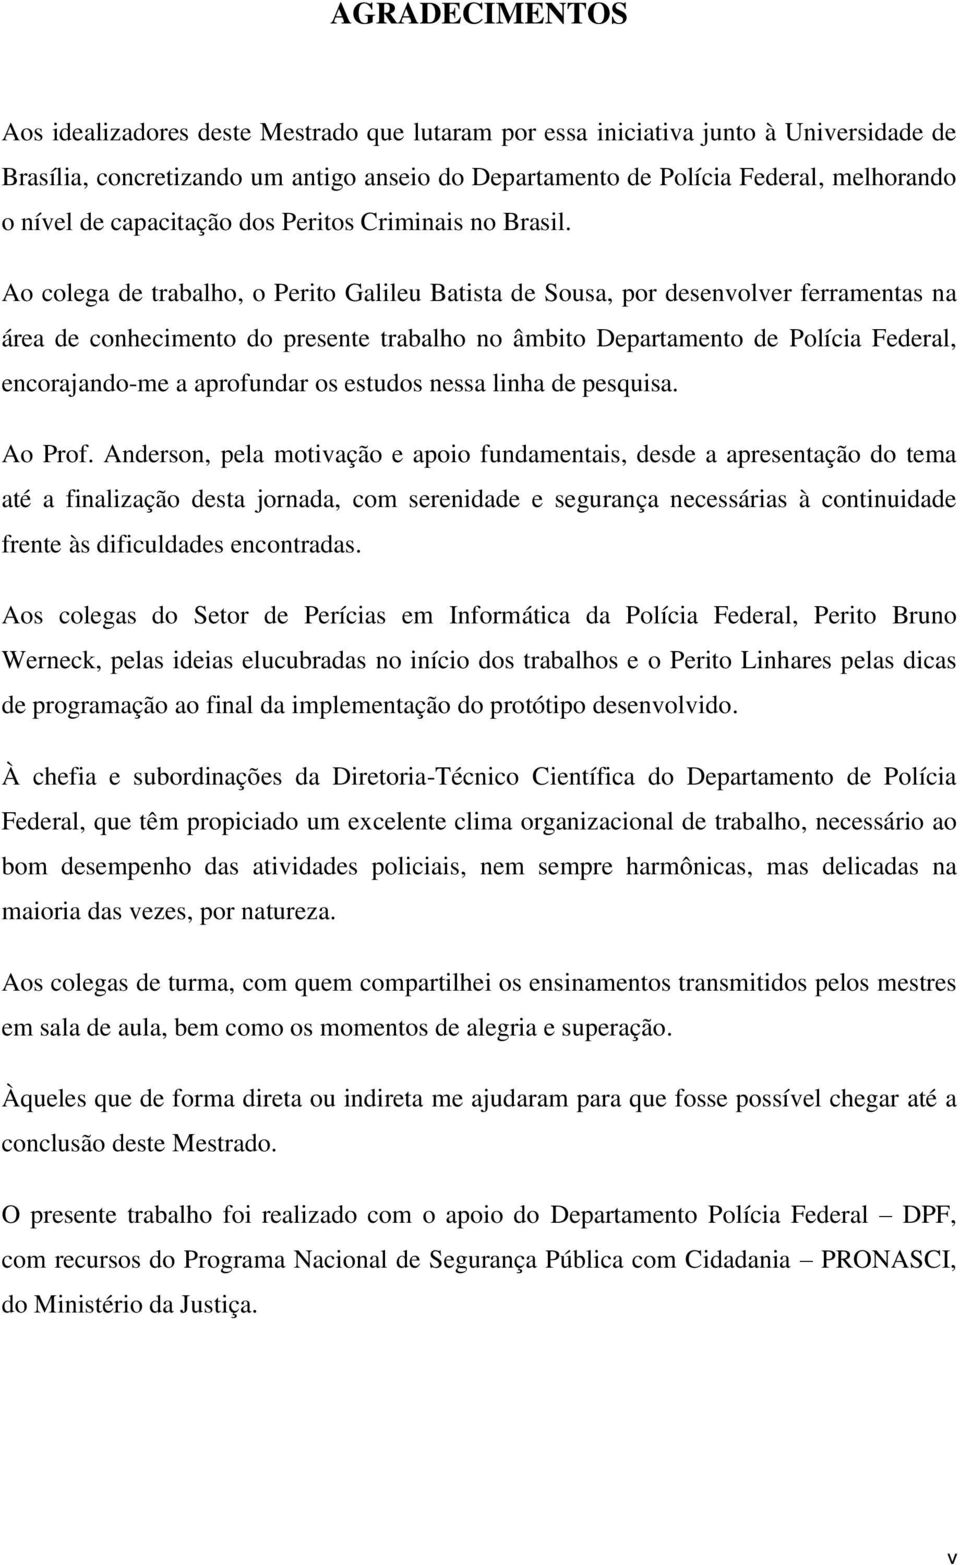 Ao colega de trabalho, o Perito Galileu Batista de Sousa, por desenvolver ferramentas na área de conhecimento do presente trabalho no âmbito Departamento de Polícia Federal, encorajandome a